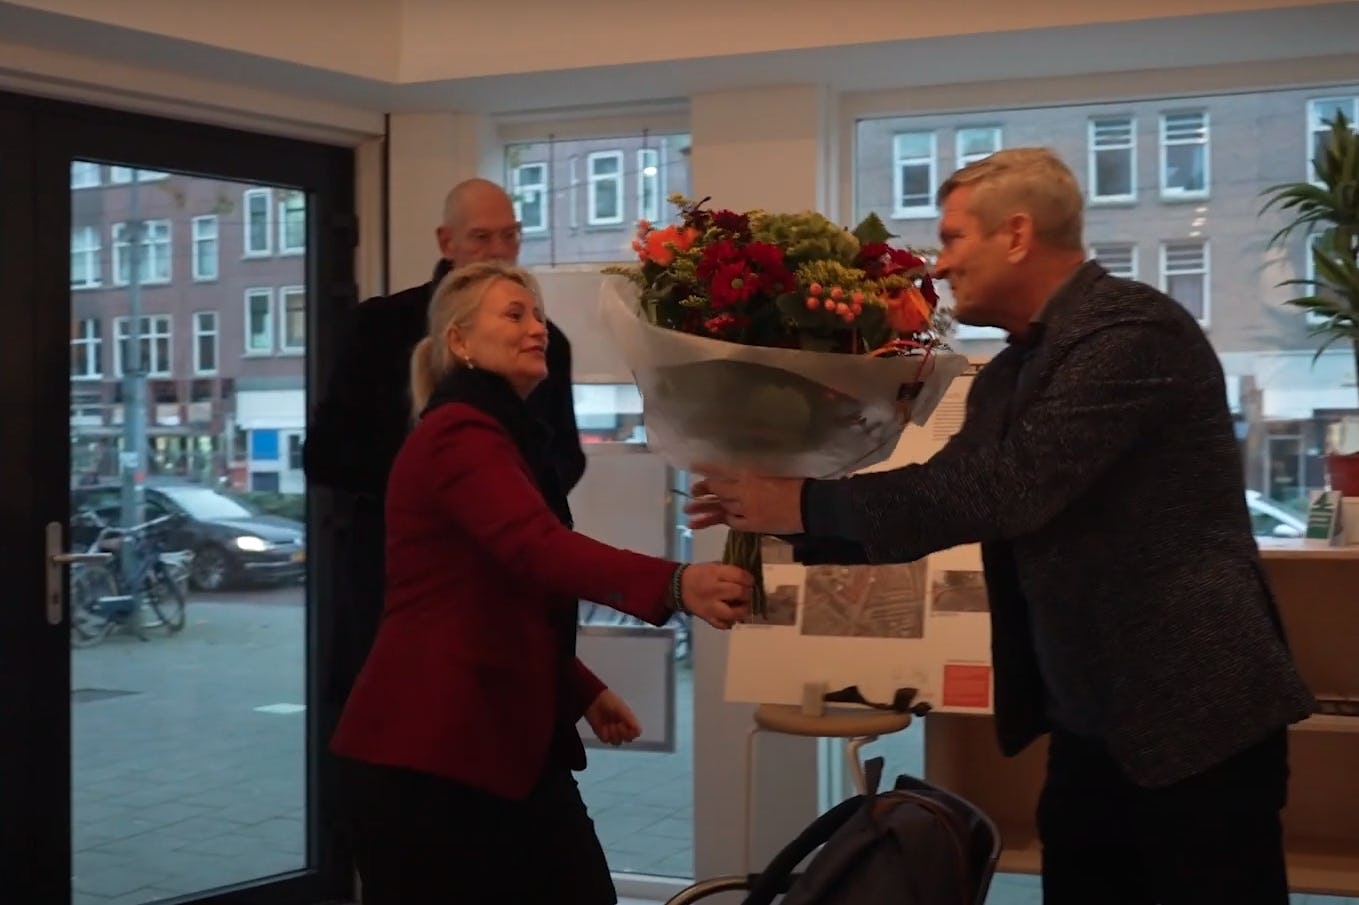 Andrea Hulshof (manager large business team Intermediair van RNHB) reikt de bloemen uit aan Ron van Gelder.